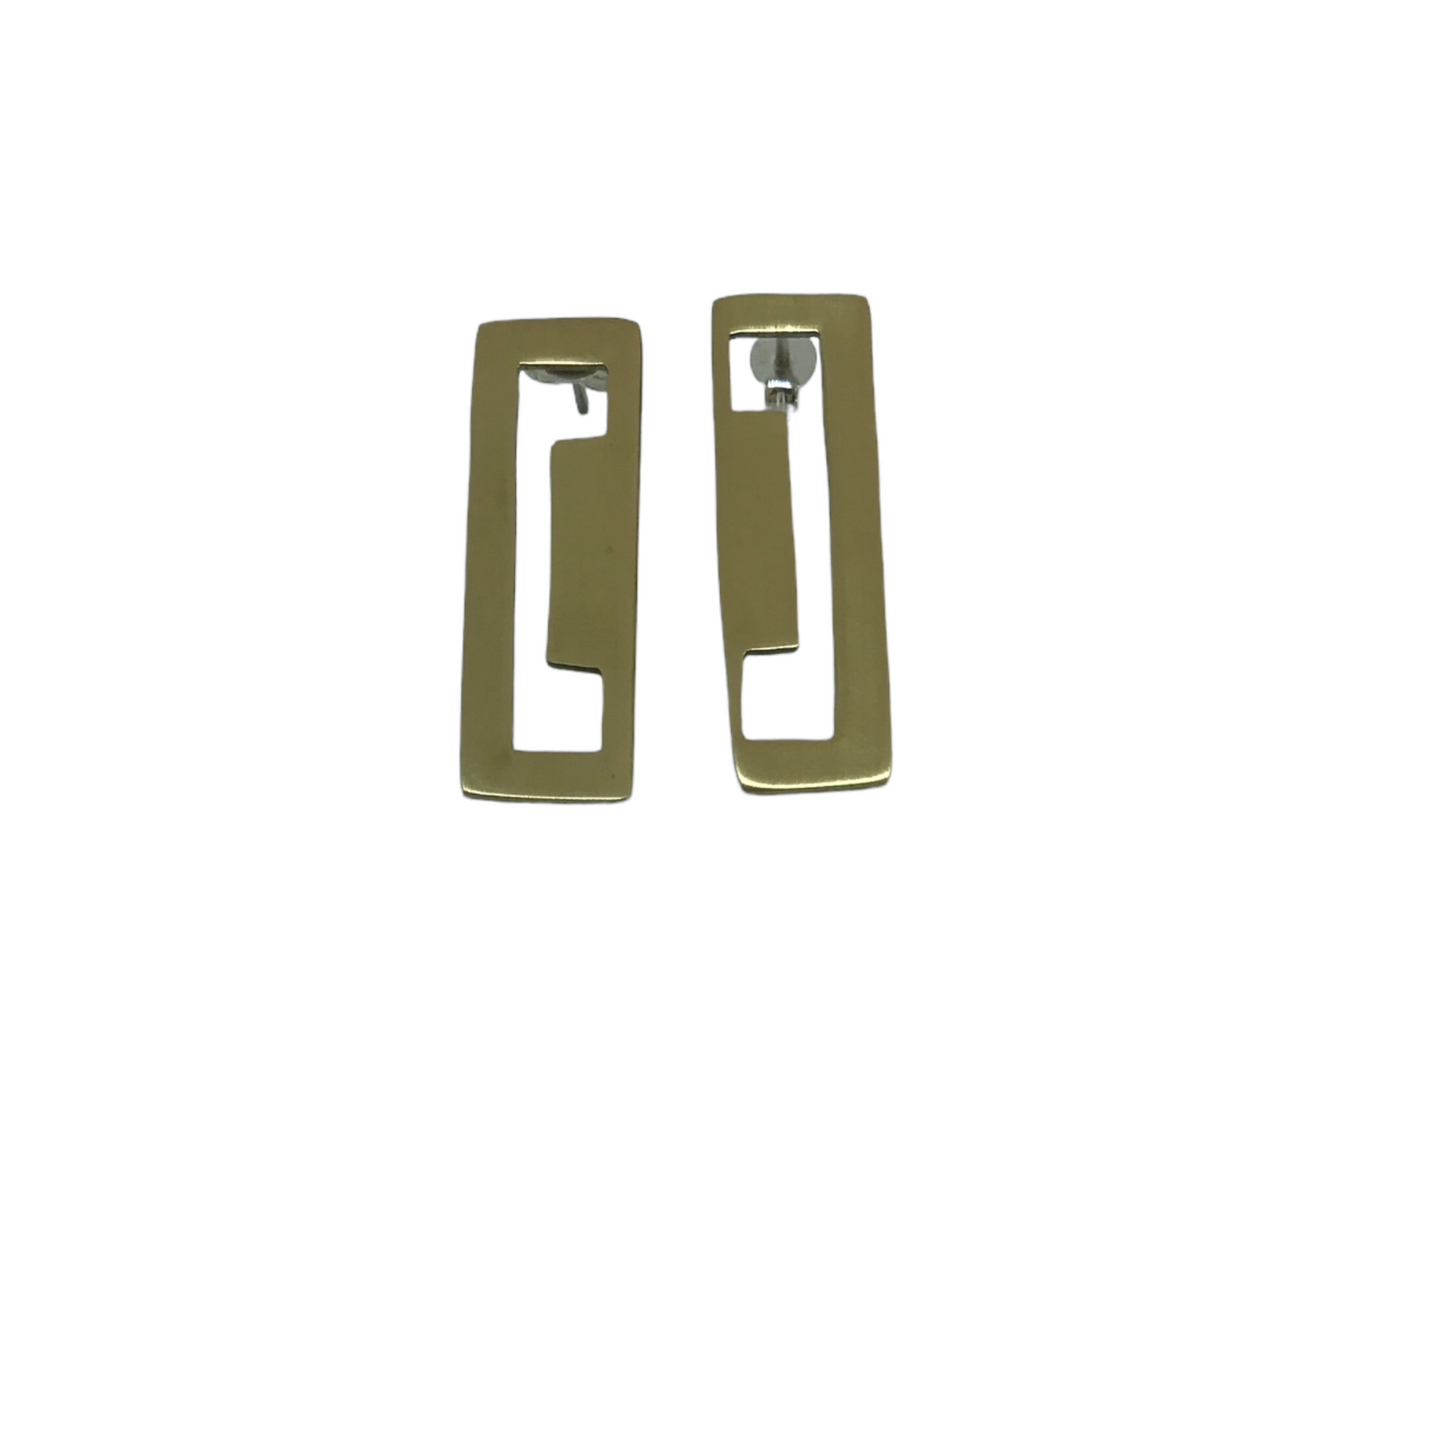 Brass earrings | Yellow Internal Ideas Earrings - CURIUDO